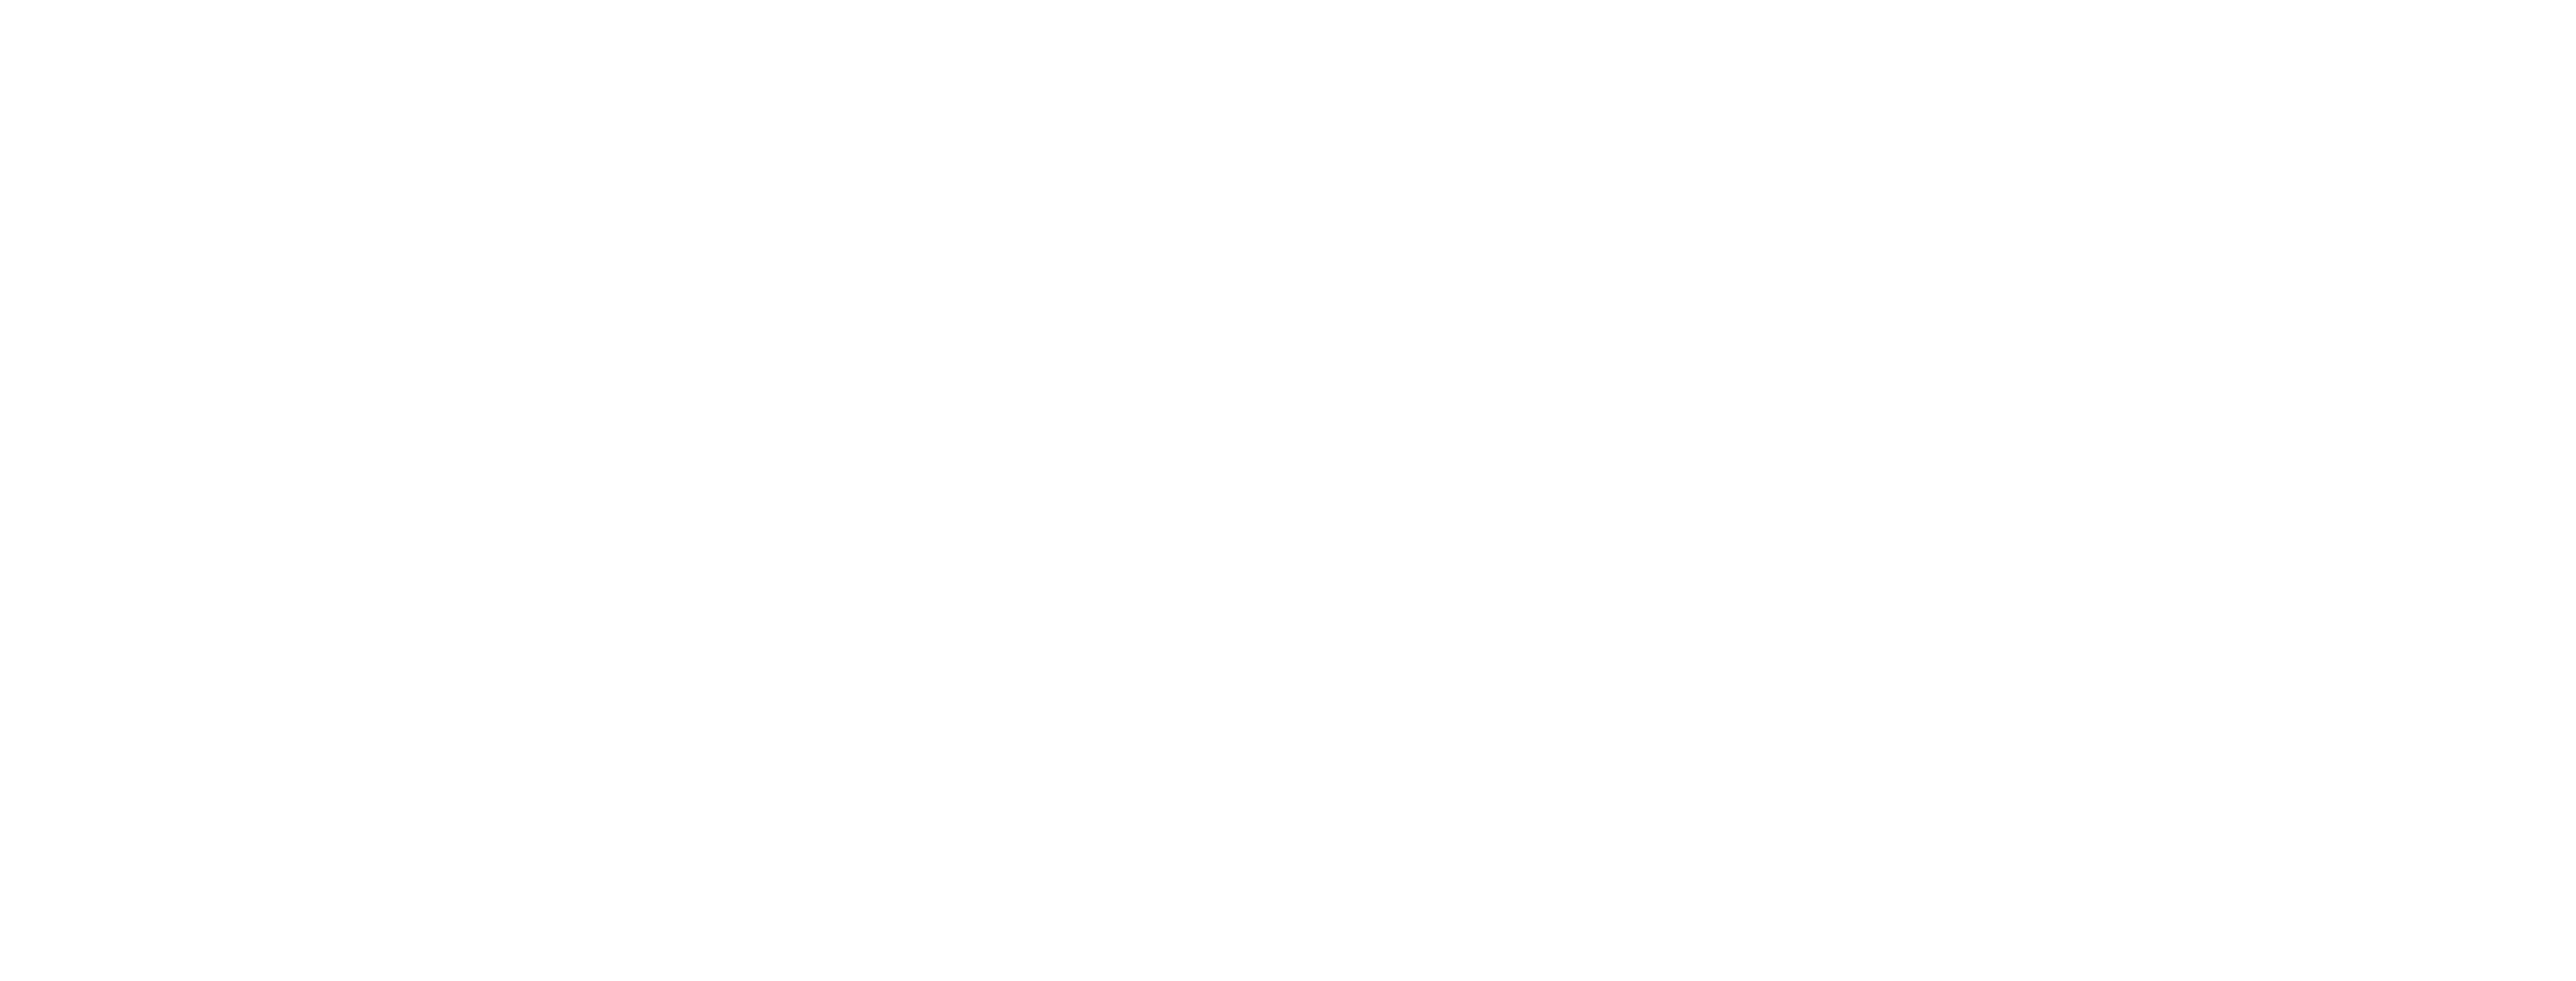 Flight of Phantoms logo